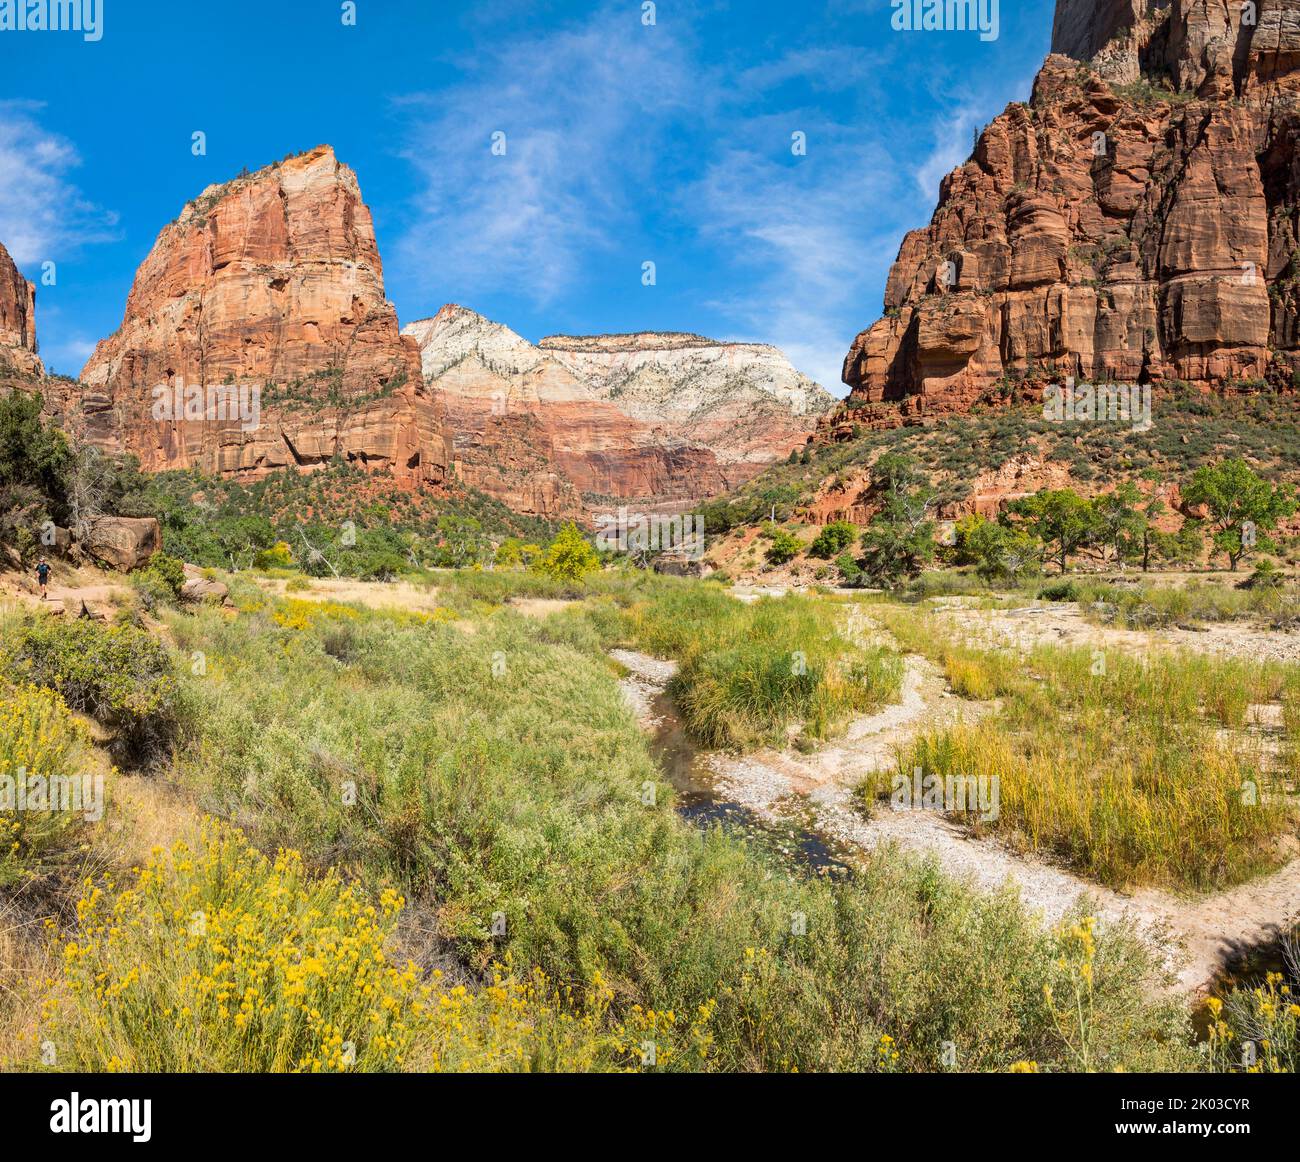 Le parc national de Zion est situé dans le sud-ouest de l'Utah, à la frontière avec l'Arizona. Il a une superficie de 579 kö² et se situe entre 1128 m et 2660 m d'altitude. Paysage dans le canyon de Zion sur la piste du plateau ouest. Vue sur la vallée jusqu'à Angels Landing. Banque D'Images